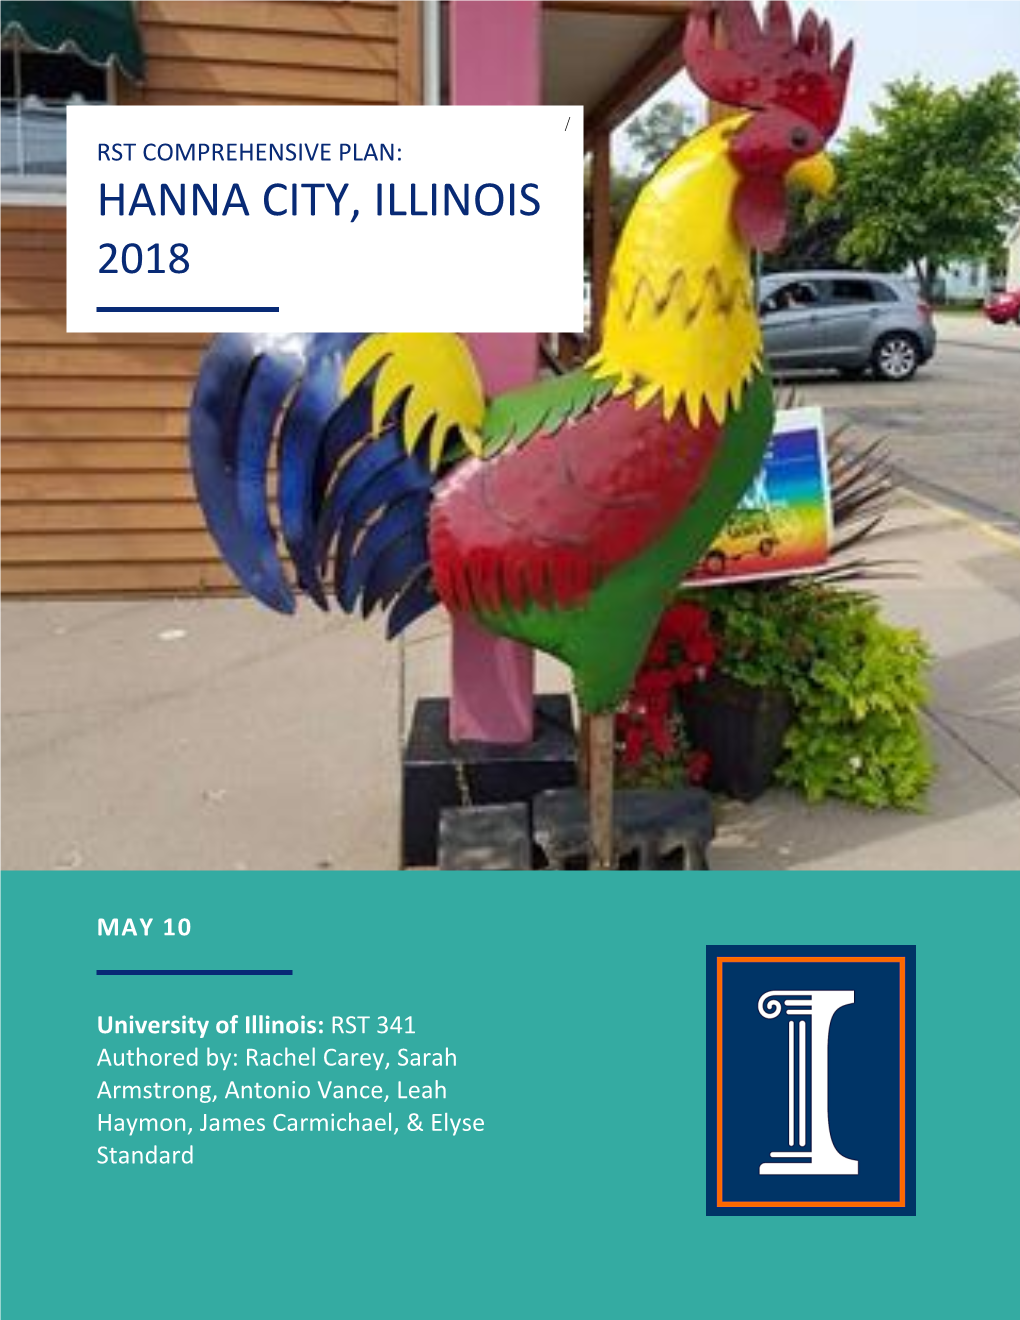 Hanna City, Illinois 2018